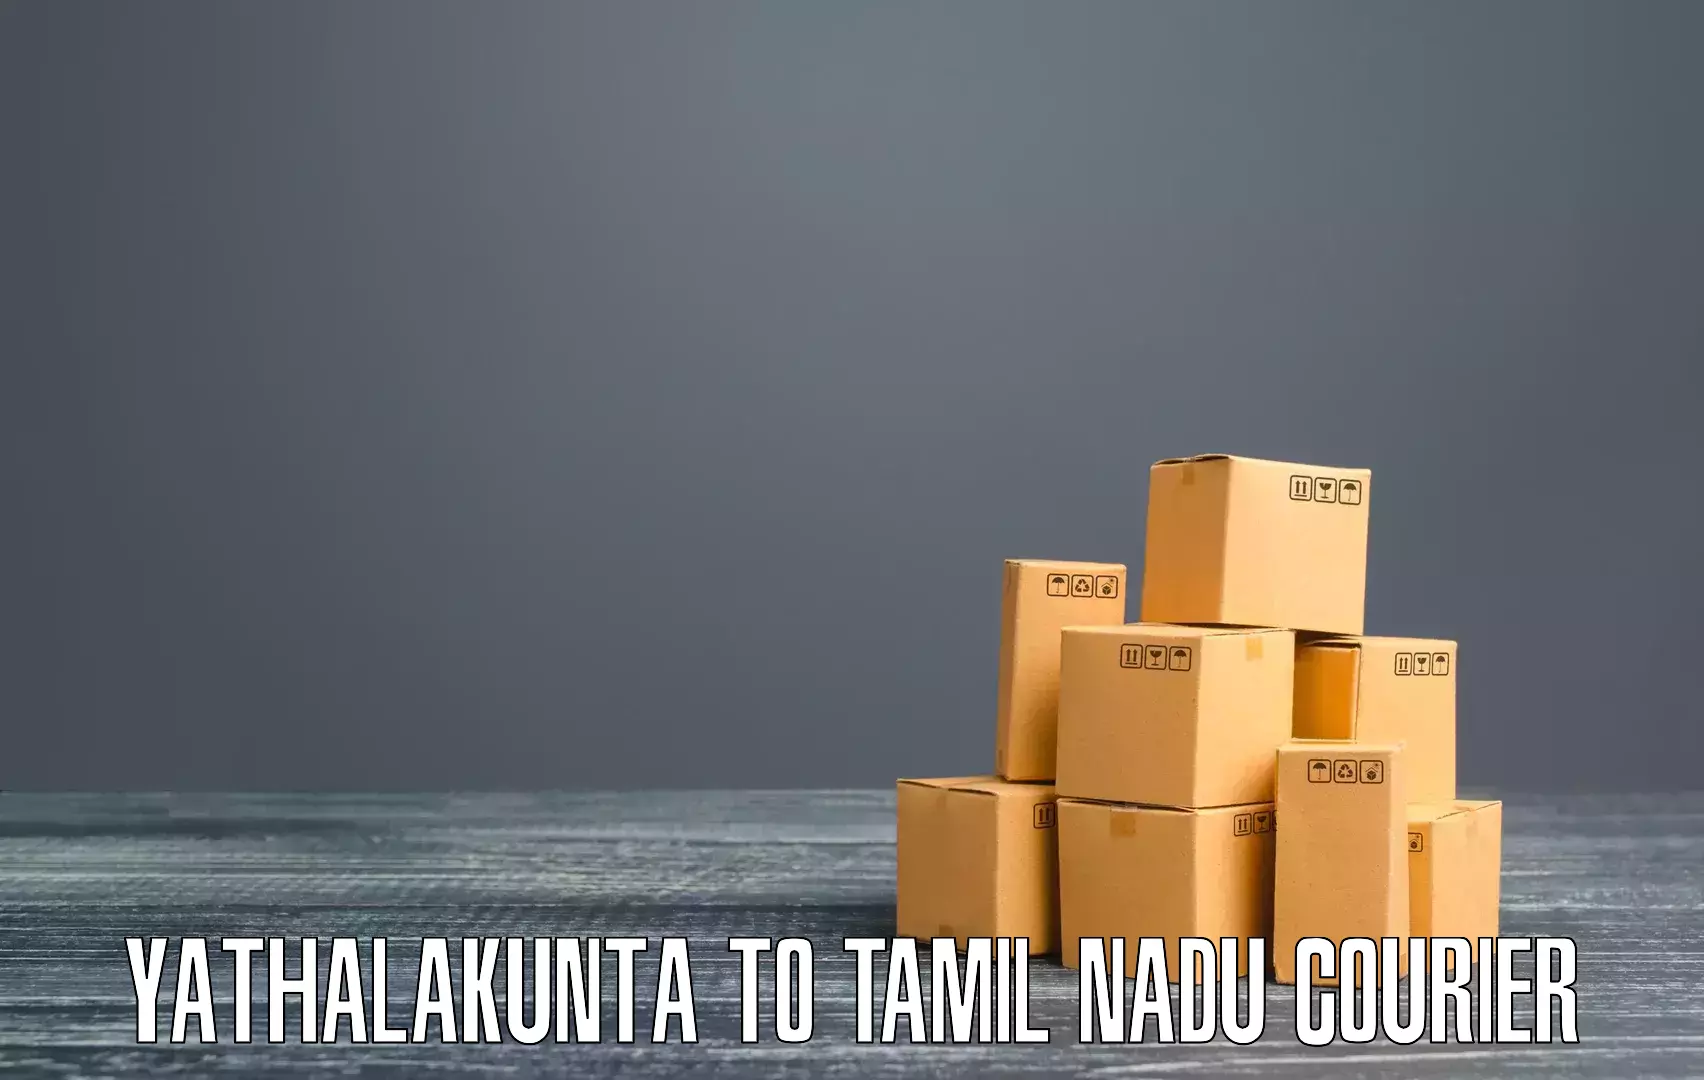 High-speed parcel service Yathalakunta to Kumbakonam